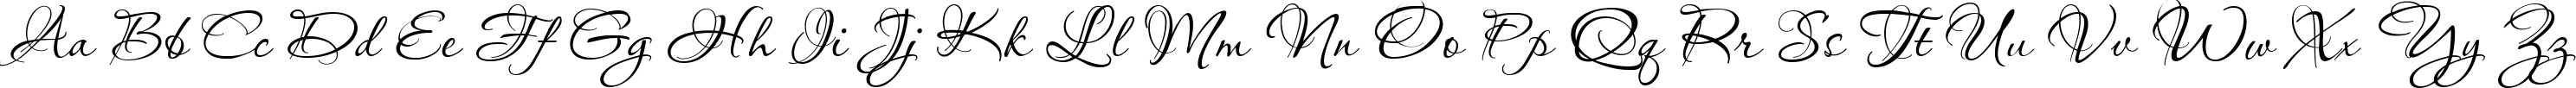 Пример написания английского алфавита шрифтом Aquarelle